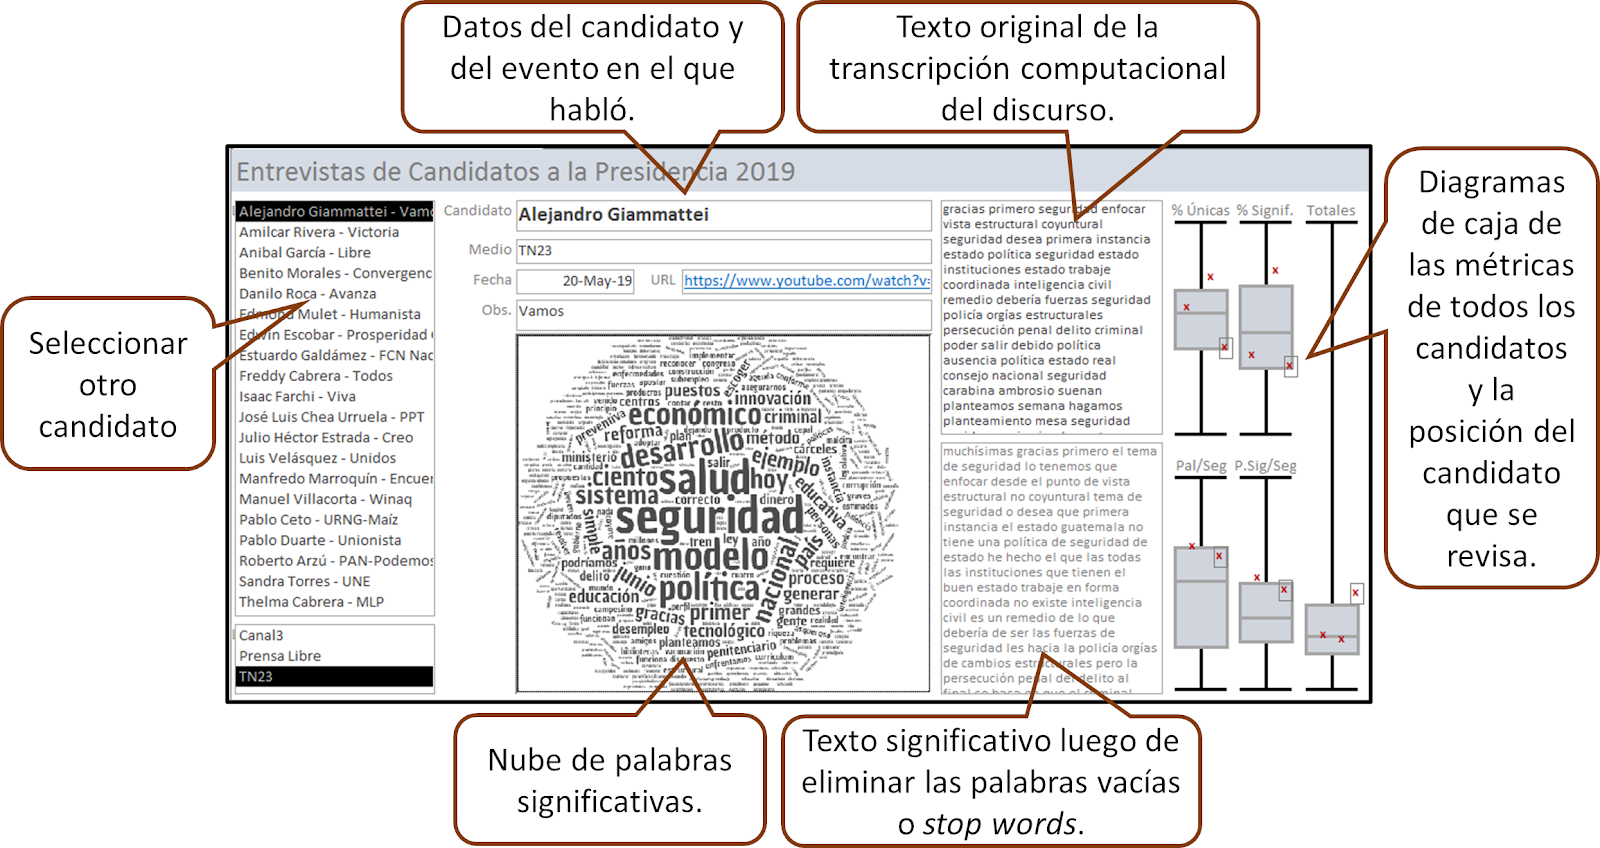 Interfaz de usuario de la base de datos de discursos con elementos que facilitan el análisis y la comparación entre candidatos.